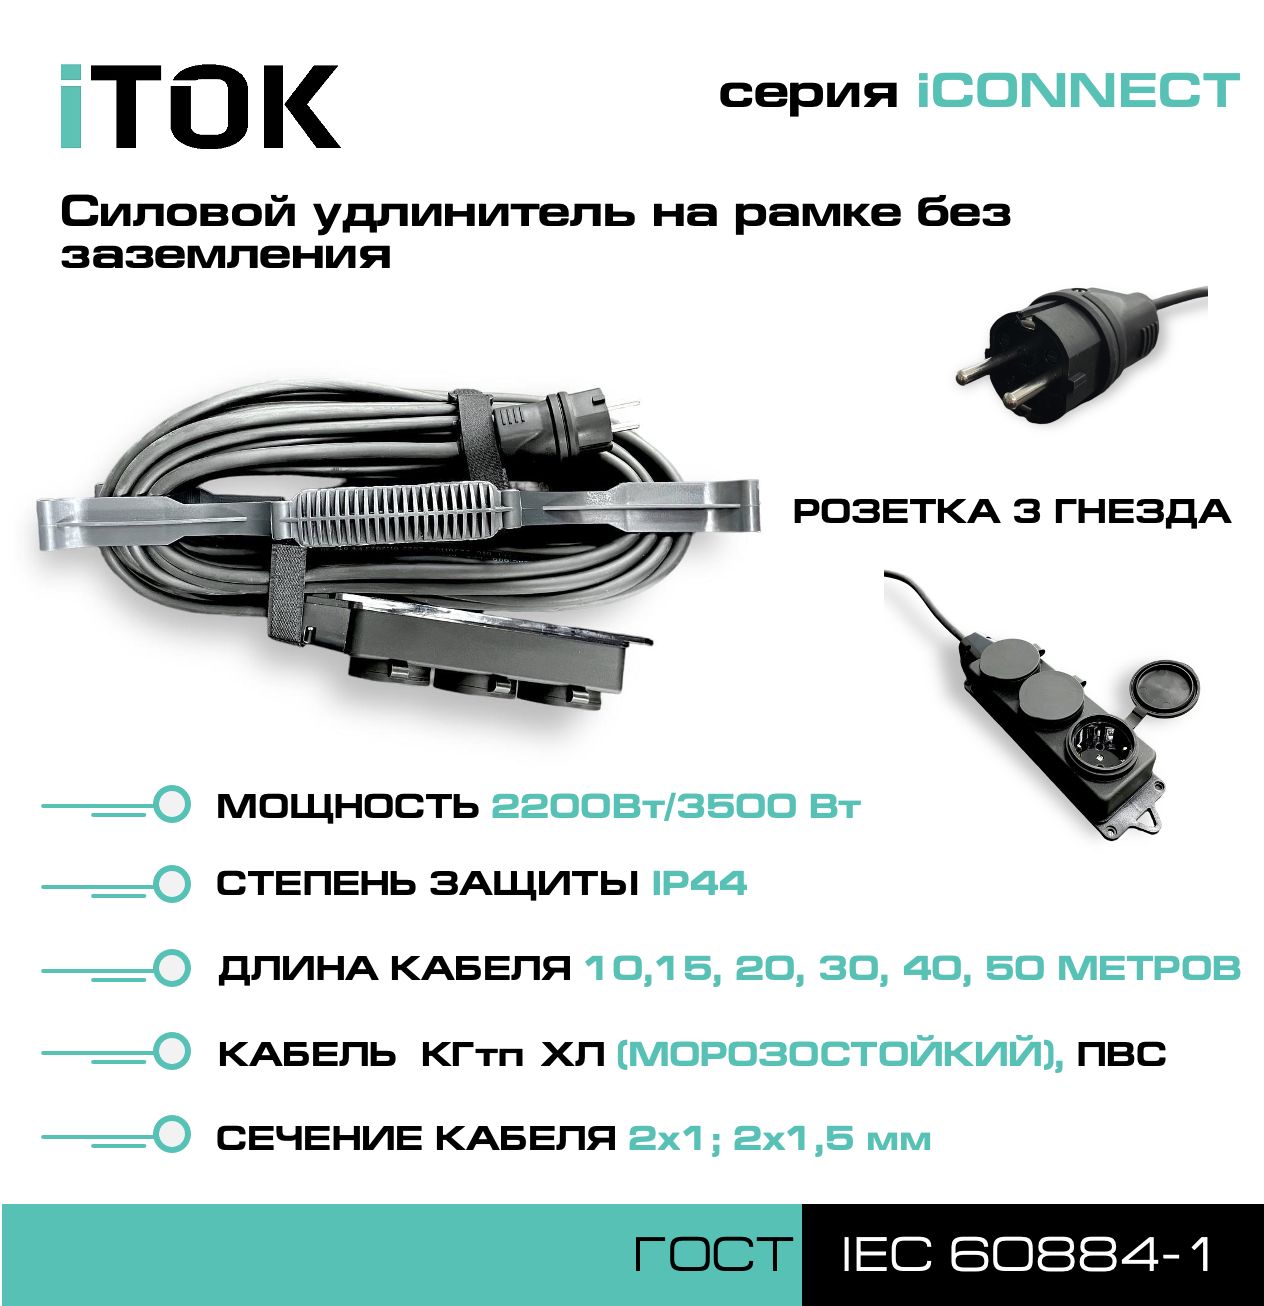 Удлинитель на рамке без земли серии iTOK iCONNECT КГтп-ХЛ 2х1,5 мм 3 гнезда IP44 10 м зарядные гнезда usb в виде клавиши marina 4 8 а more 10264237